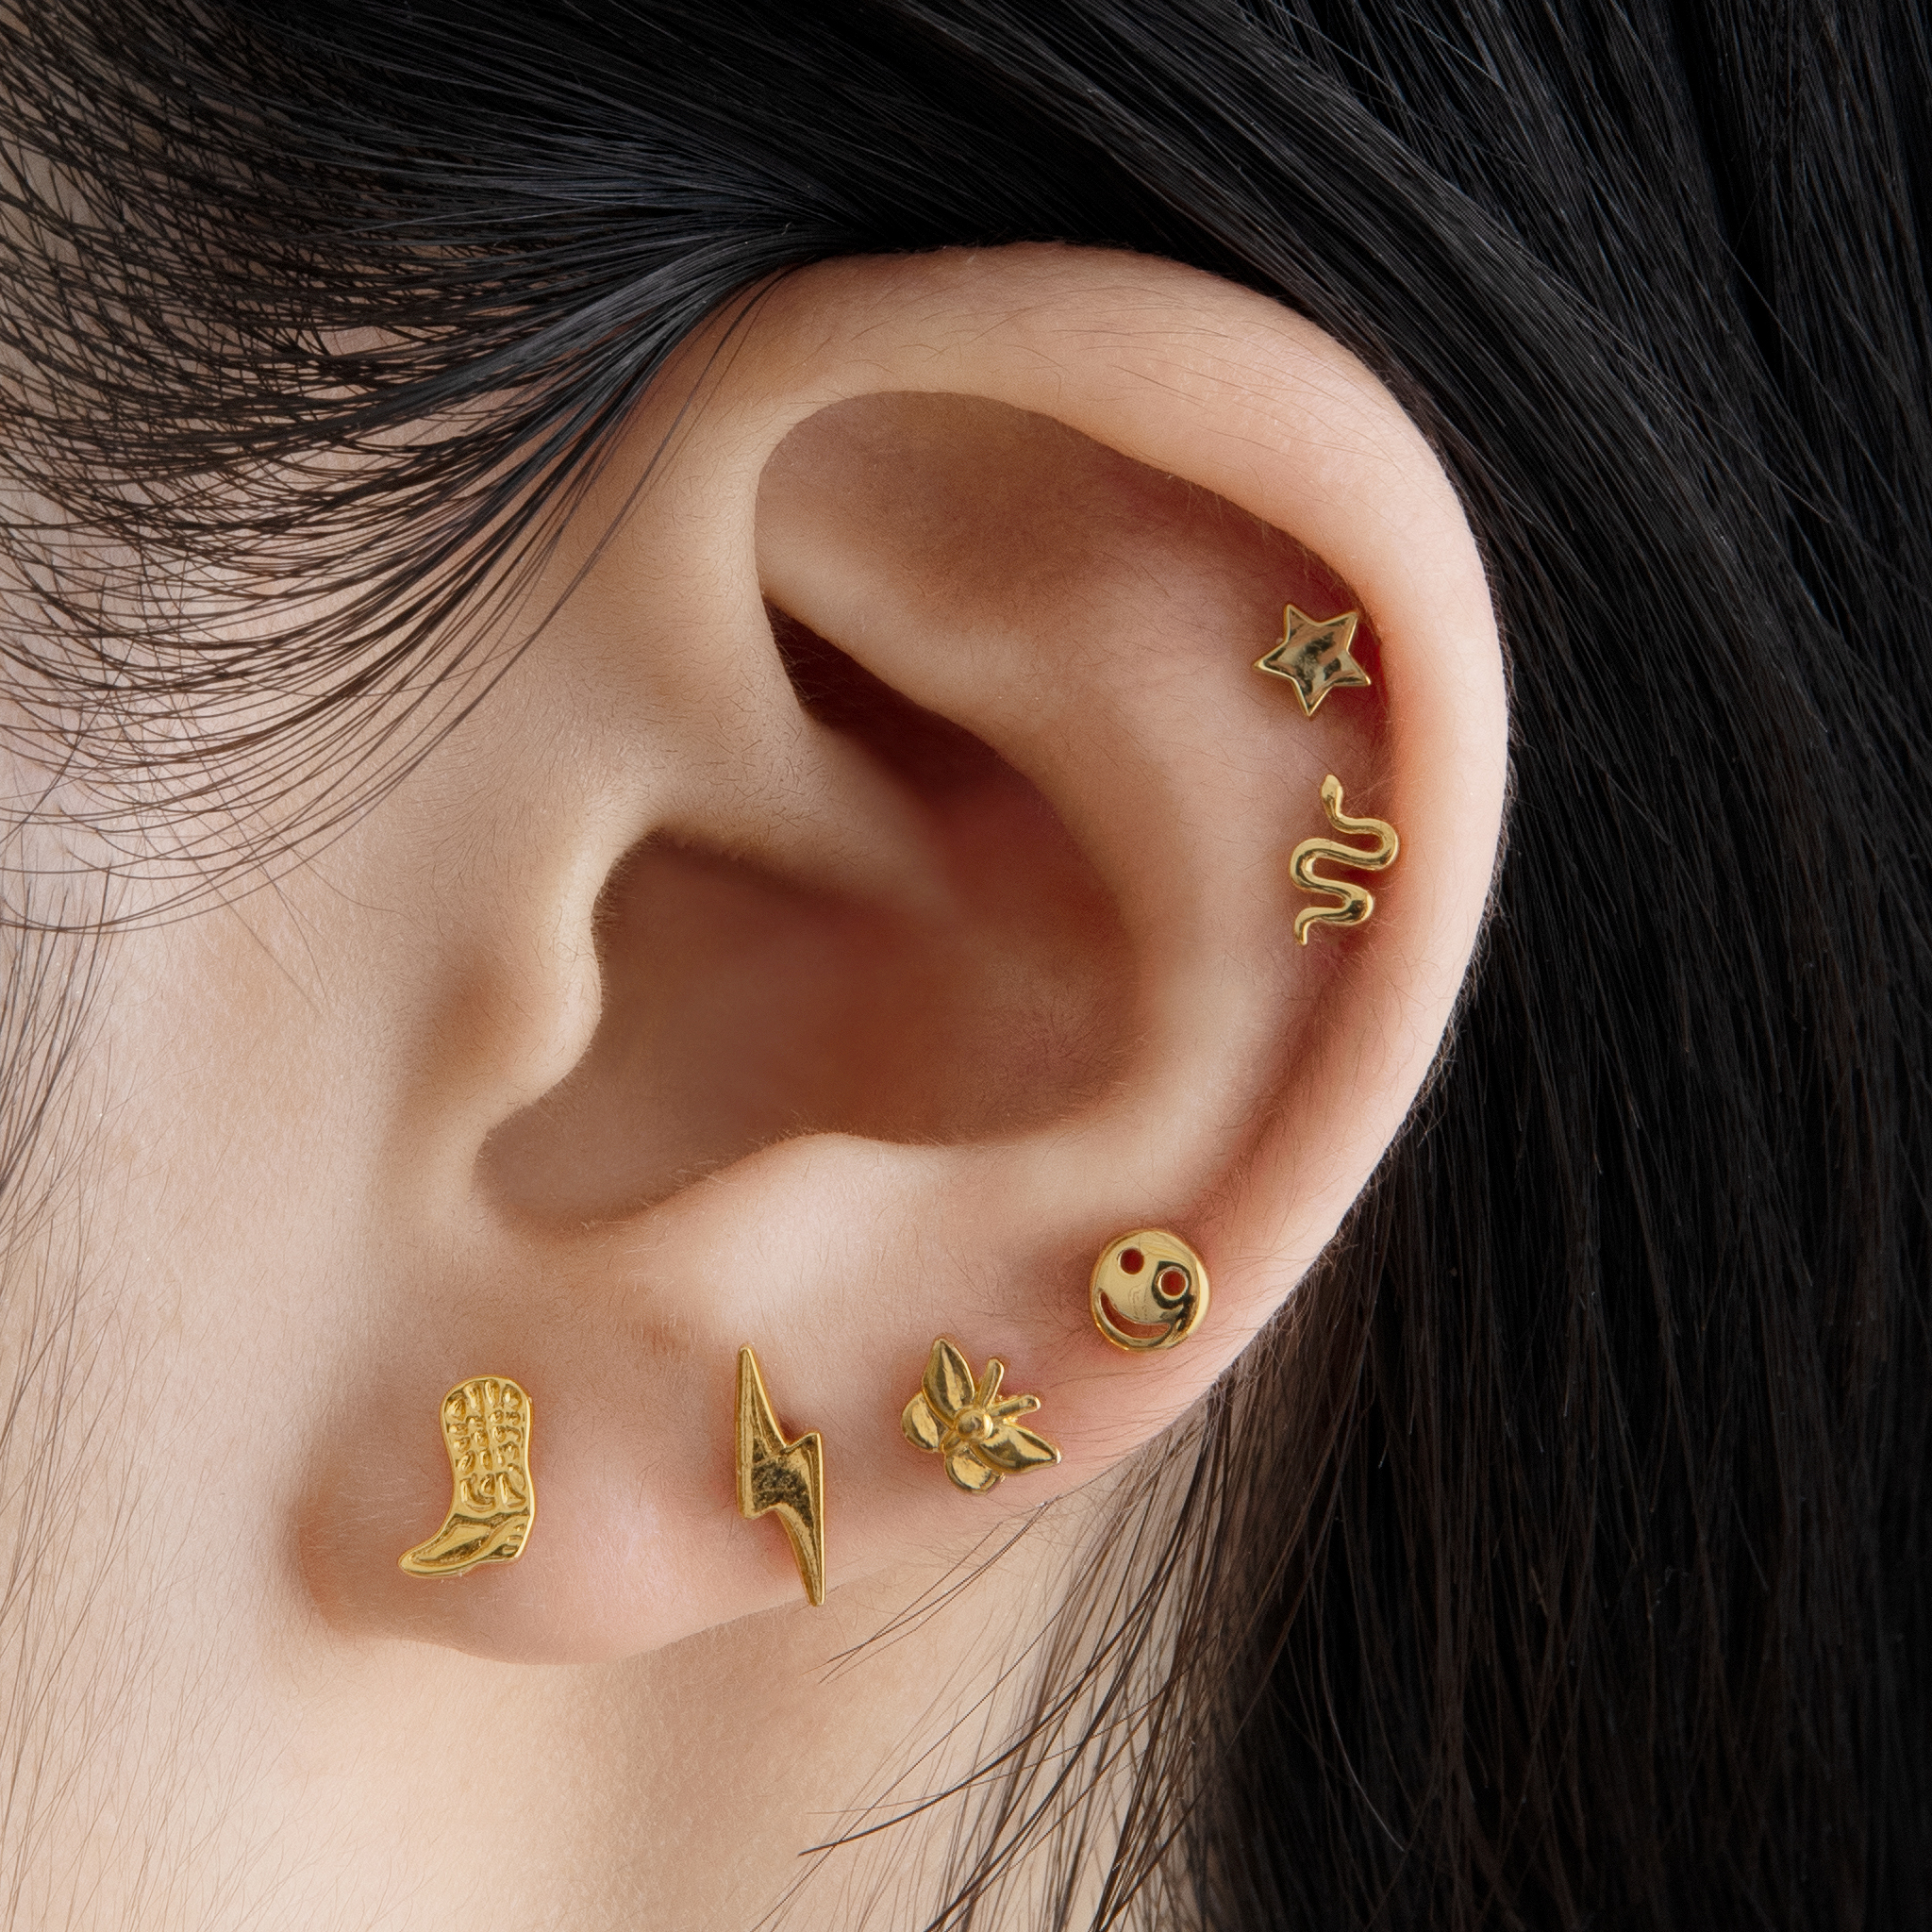 Low Maintenance Piercing|925 Sterling Silver Zircon Stud Earrings For Women  - Water-resistant Tragus Piercing Jewelry